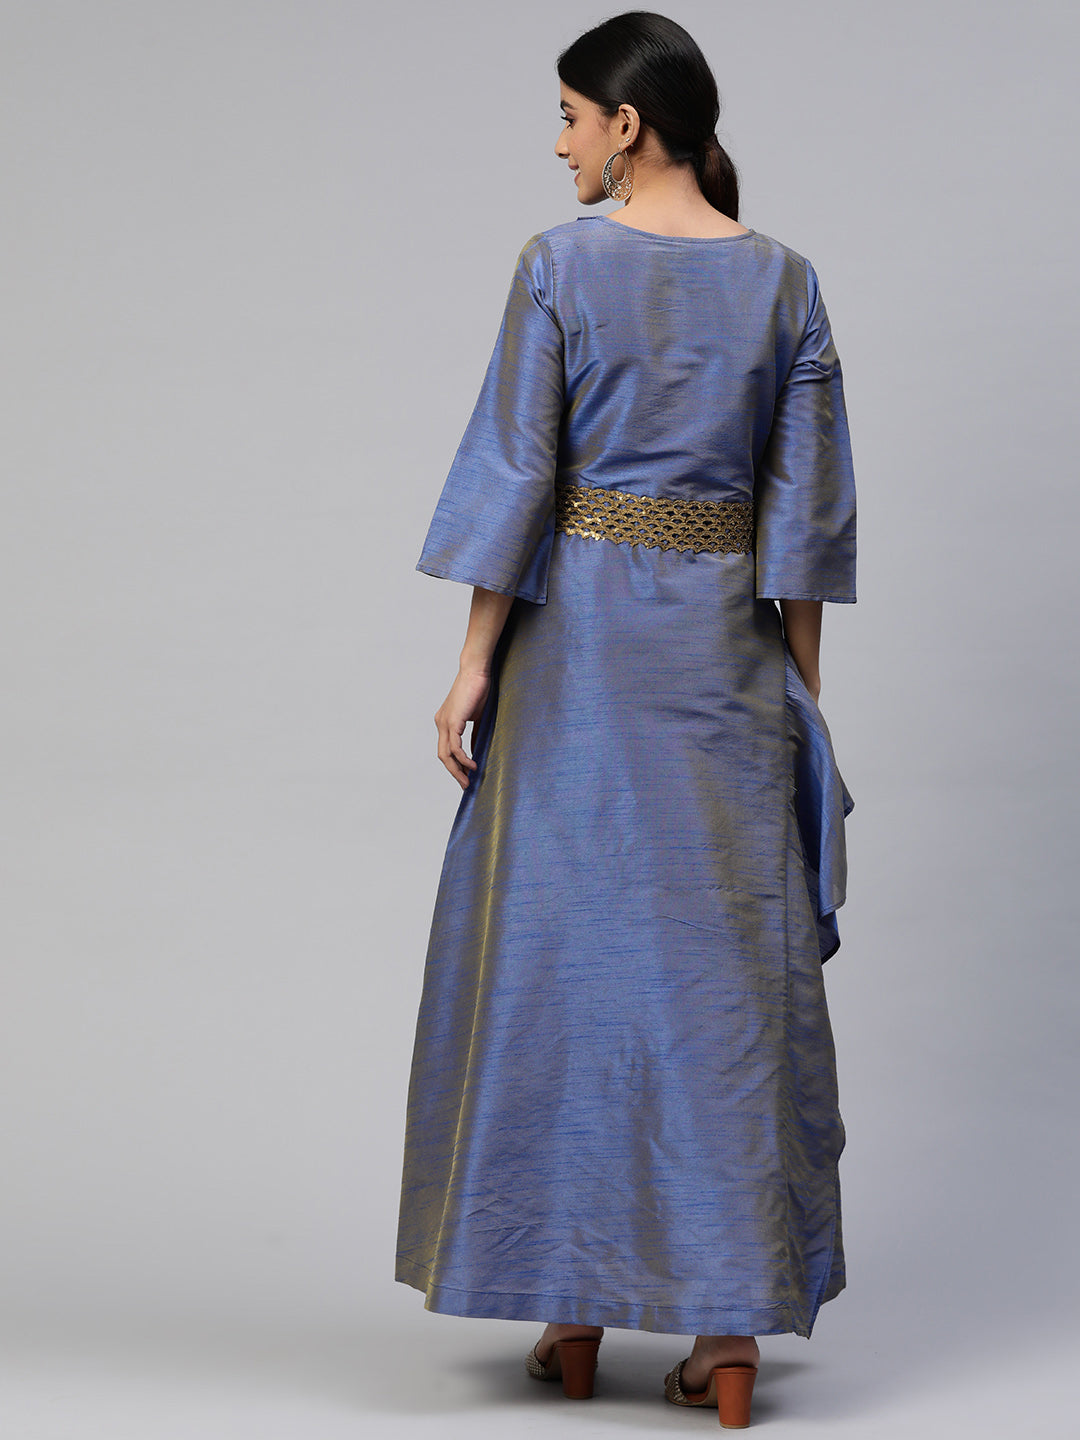 Cottinfab Ethnic Maxi Dress